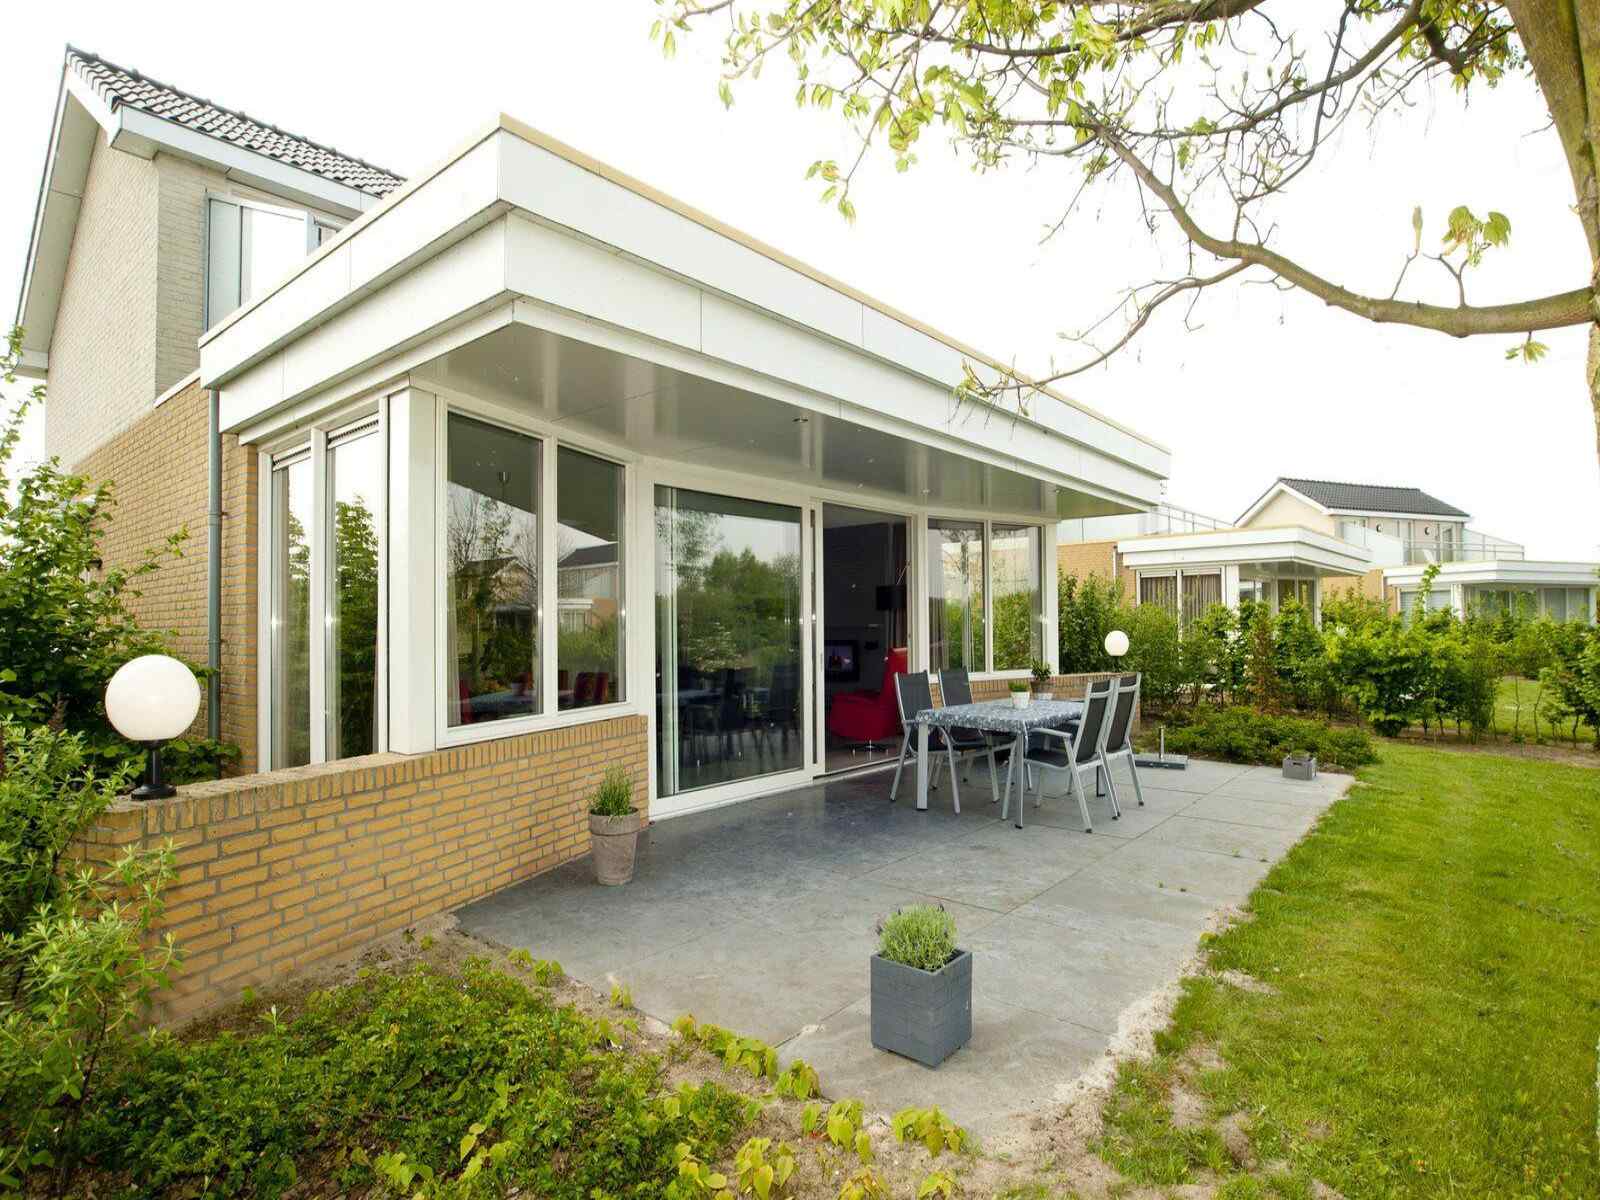 Luxe 4 persoons wellness-vakantiehuis aan de Maasplassen nabij Roermond - Limburg Top Merken Winkel